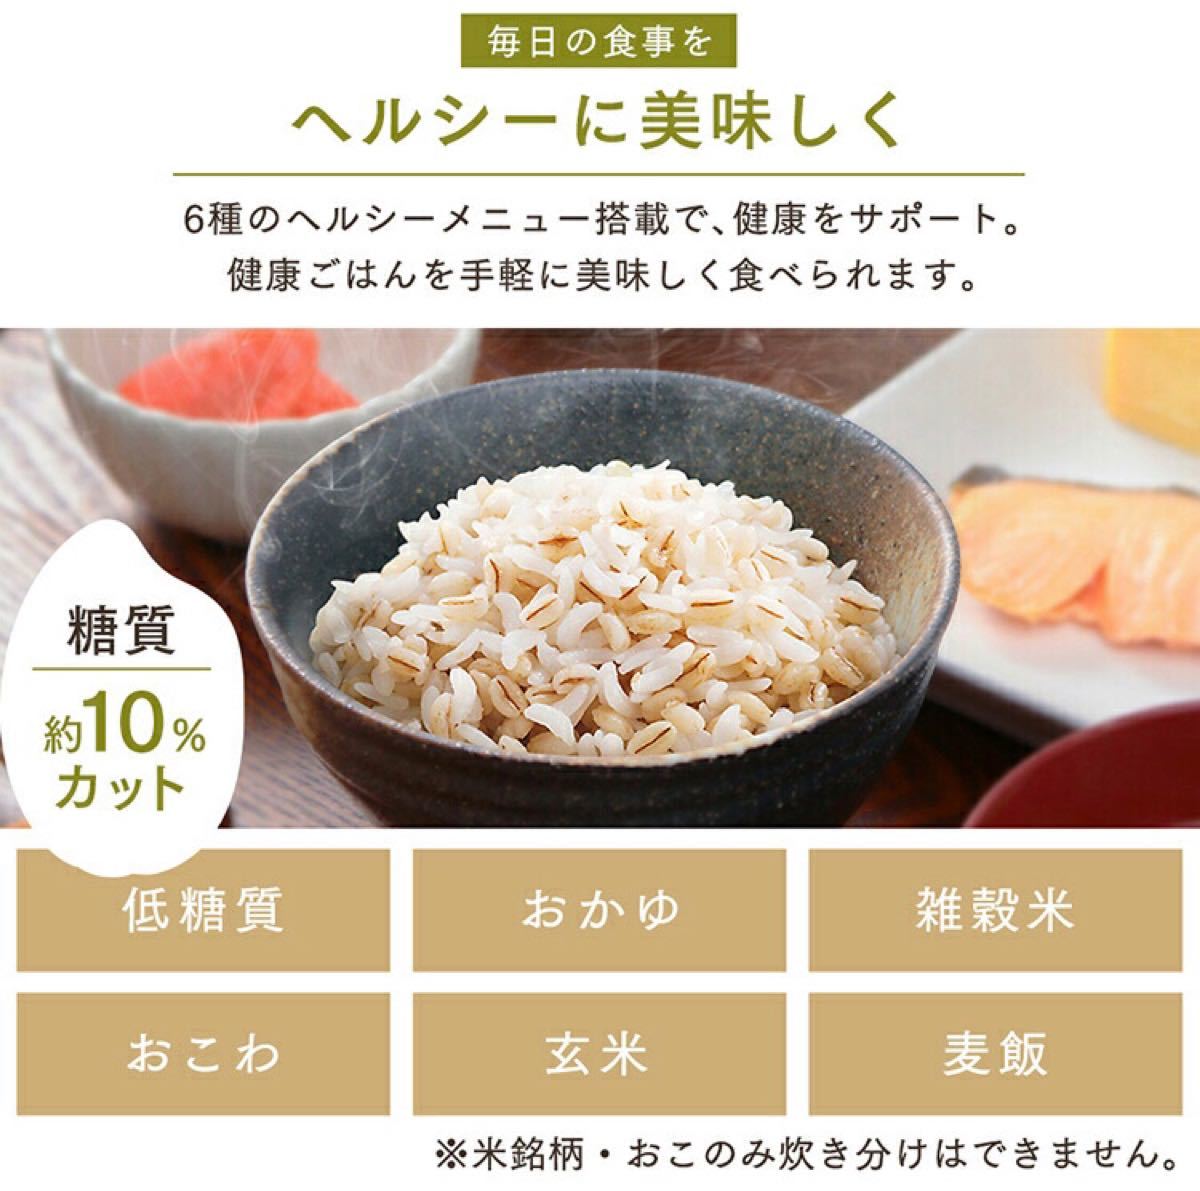 【新品・未使用】アイリスオーヤマ 炊飯器 5.5合 RC-ME50-W